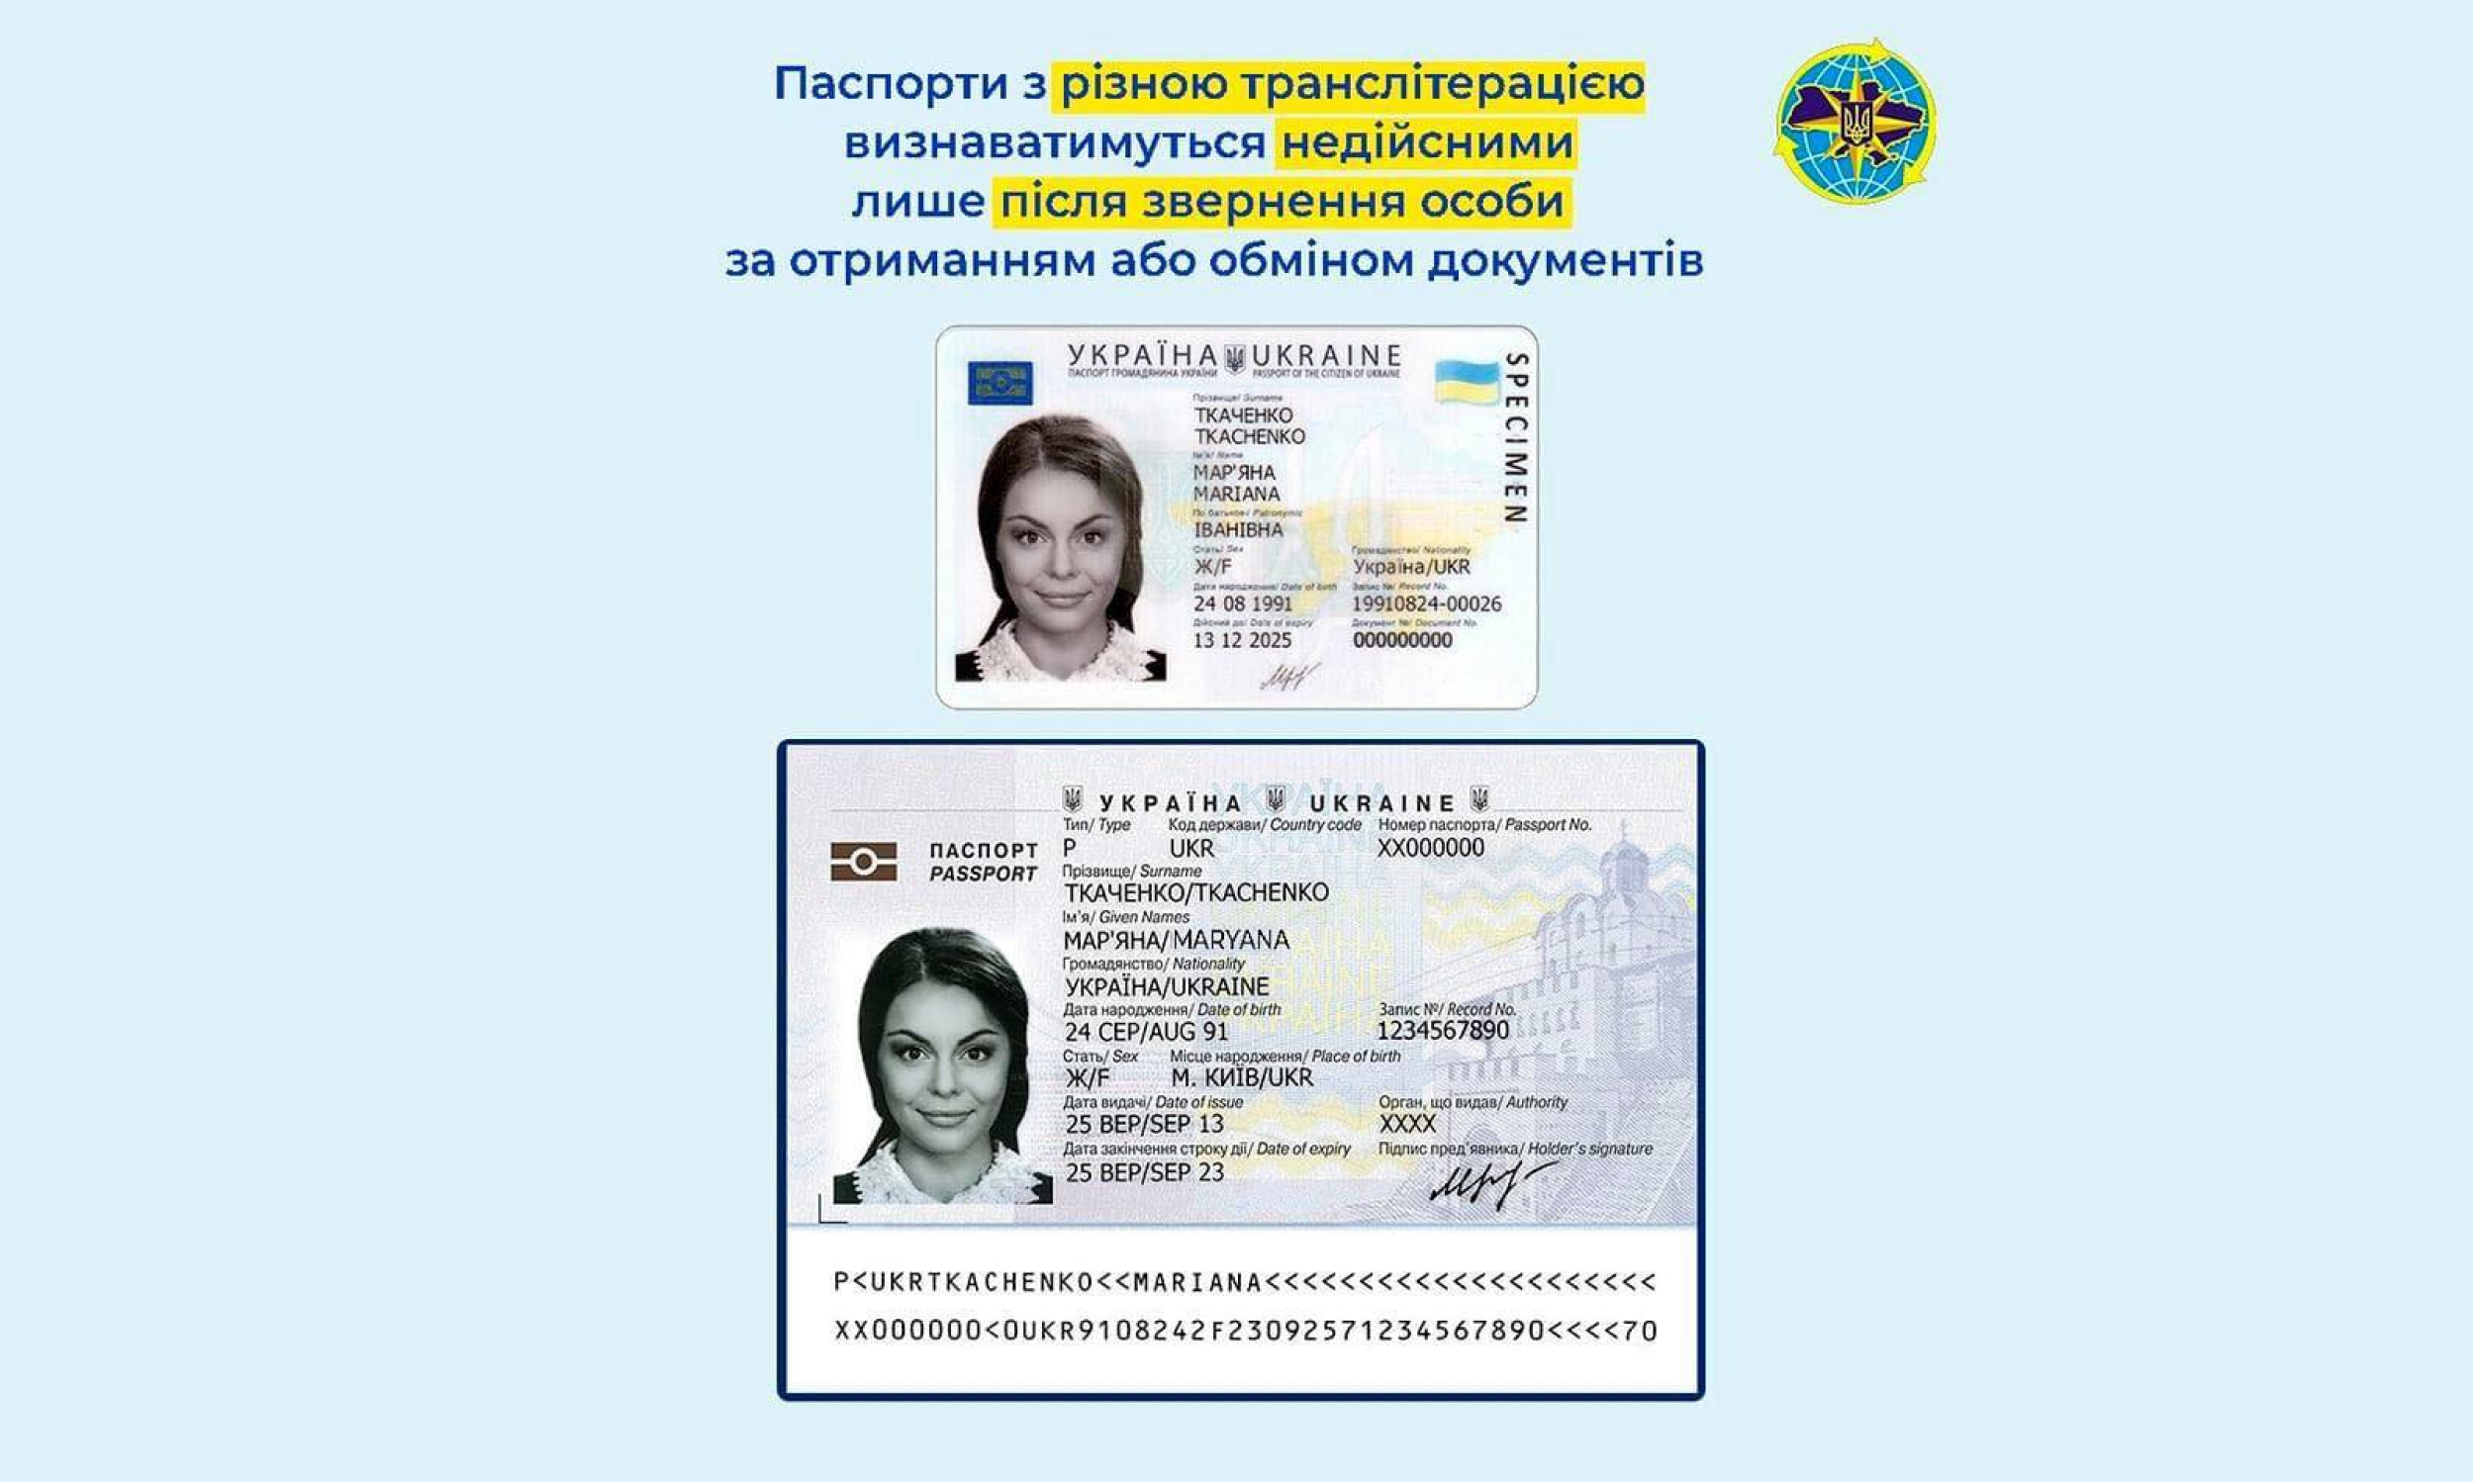 МВС Паспорти з різною транслітерацією визнаватимуться недійсними лише після звернення особи за отриманням або обміном документів